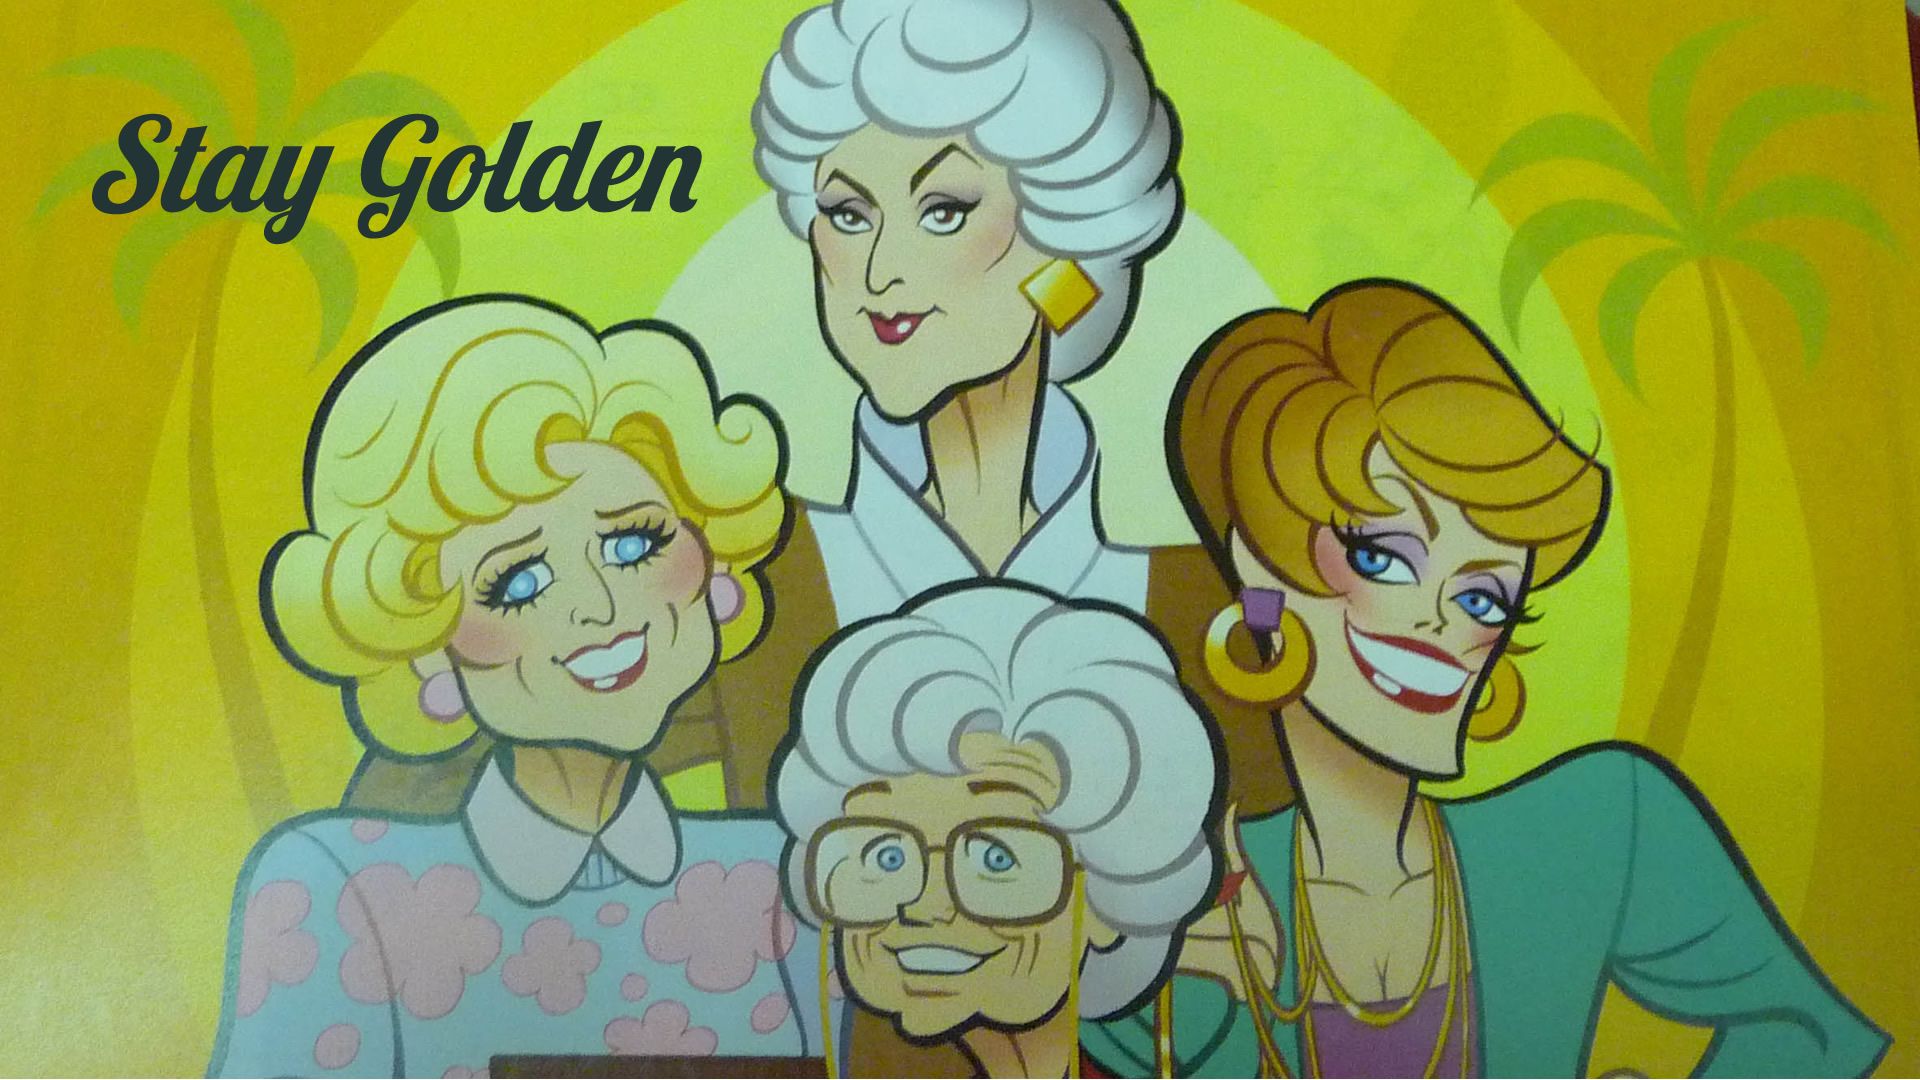 Andrew On Full HD Wallpaper In Girl Cartoon Golden